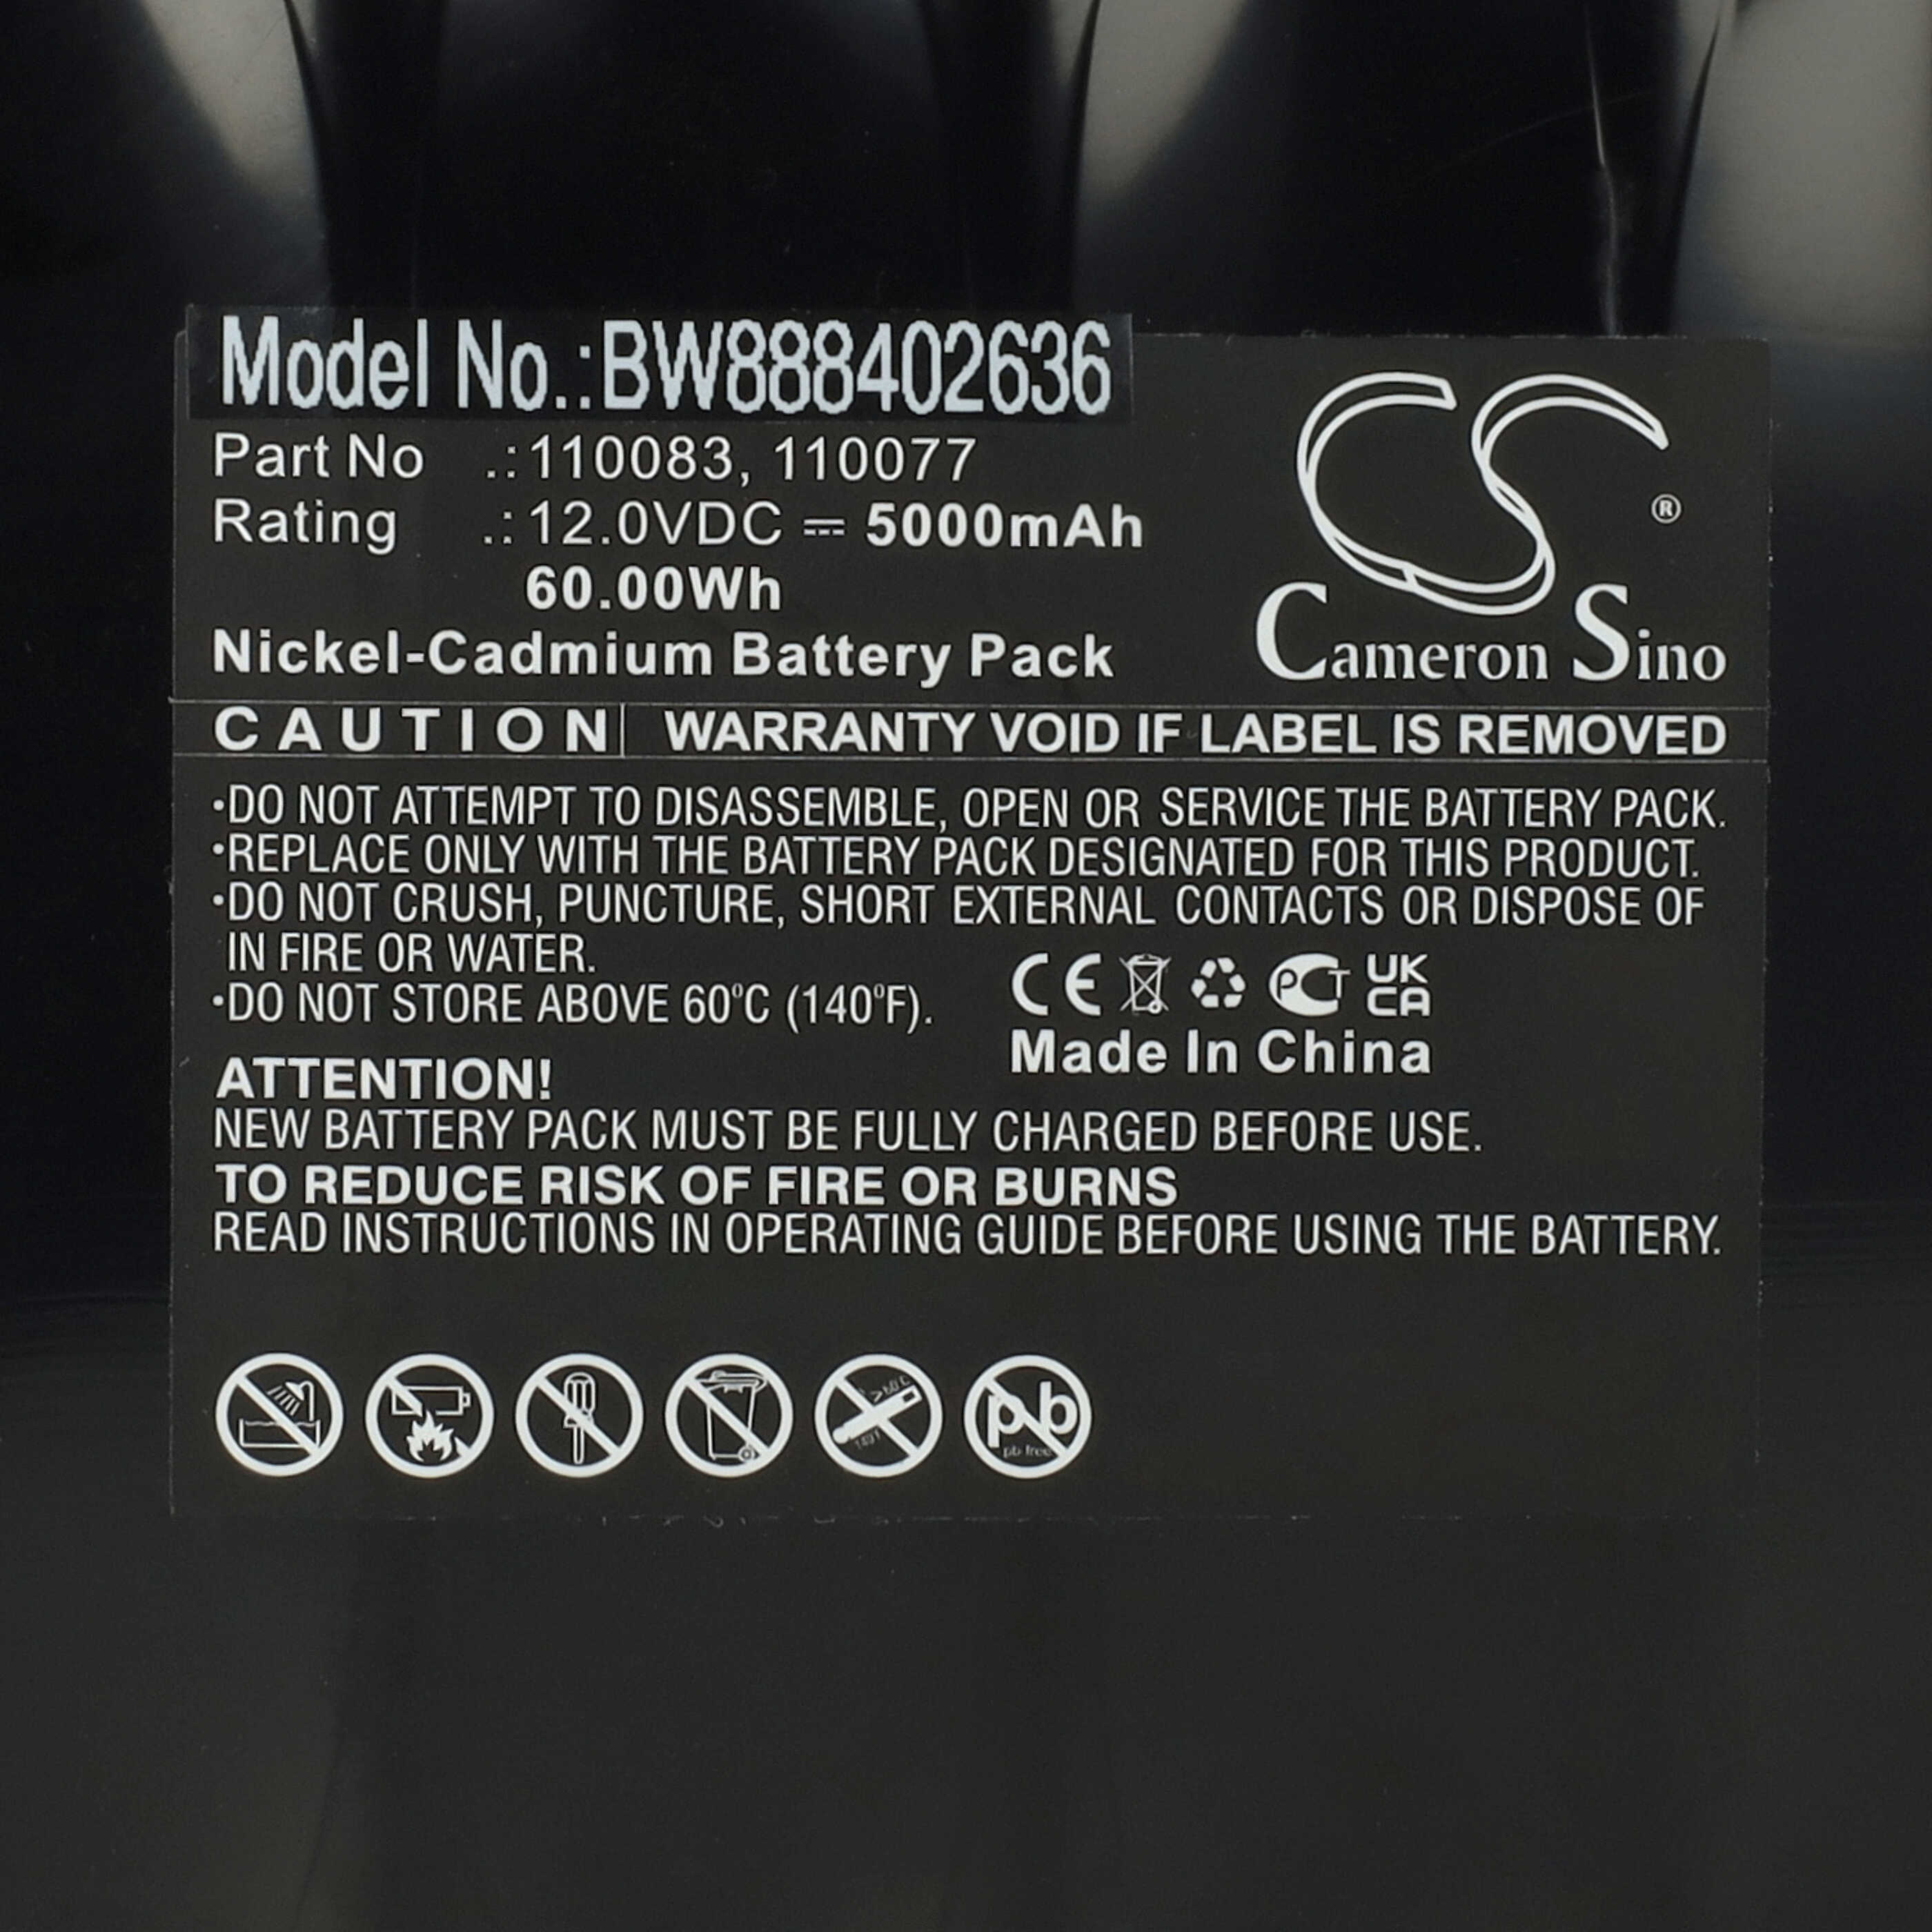 Batterie remplace Siemens 125-00-455100180, 110077, 110083 pour appareil médical - 5000mAh 12V NiCd